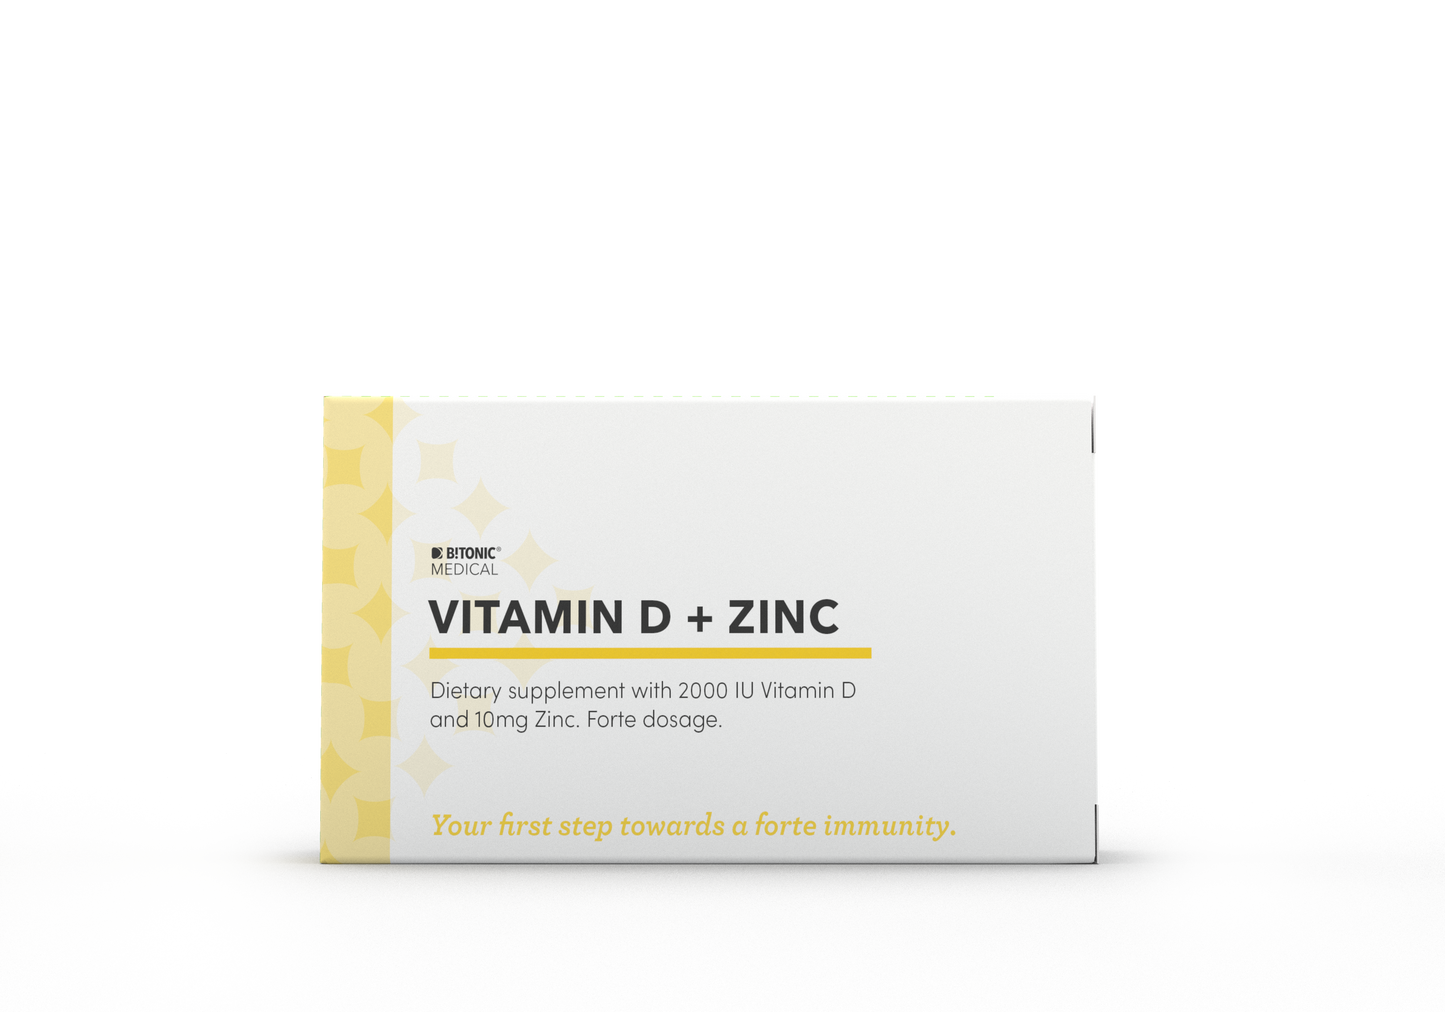 BTONIC MEDICAL Vitamina D + Zinc